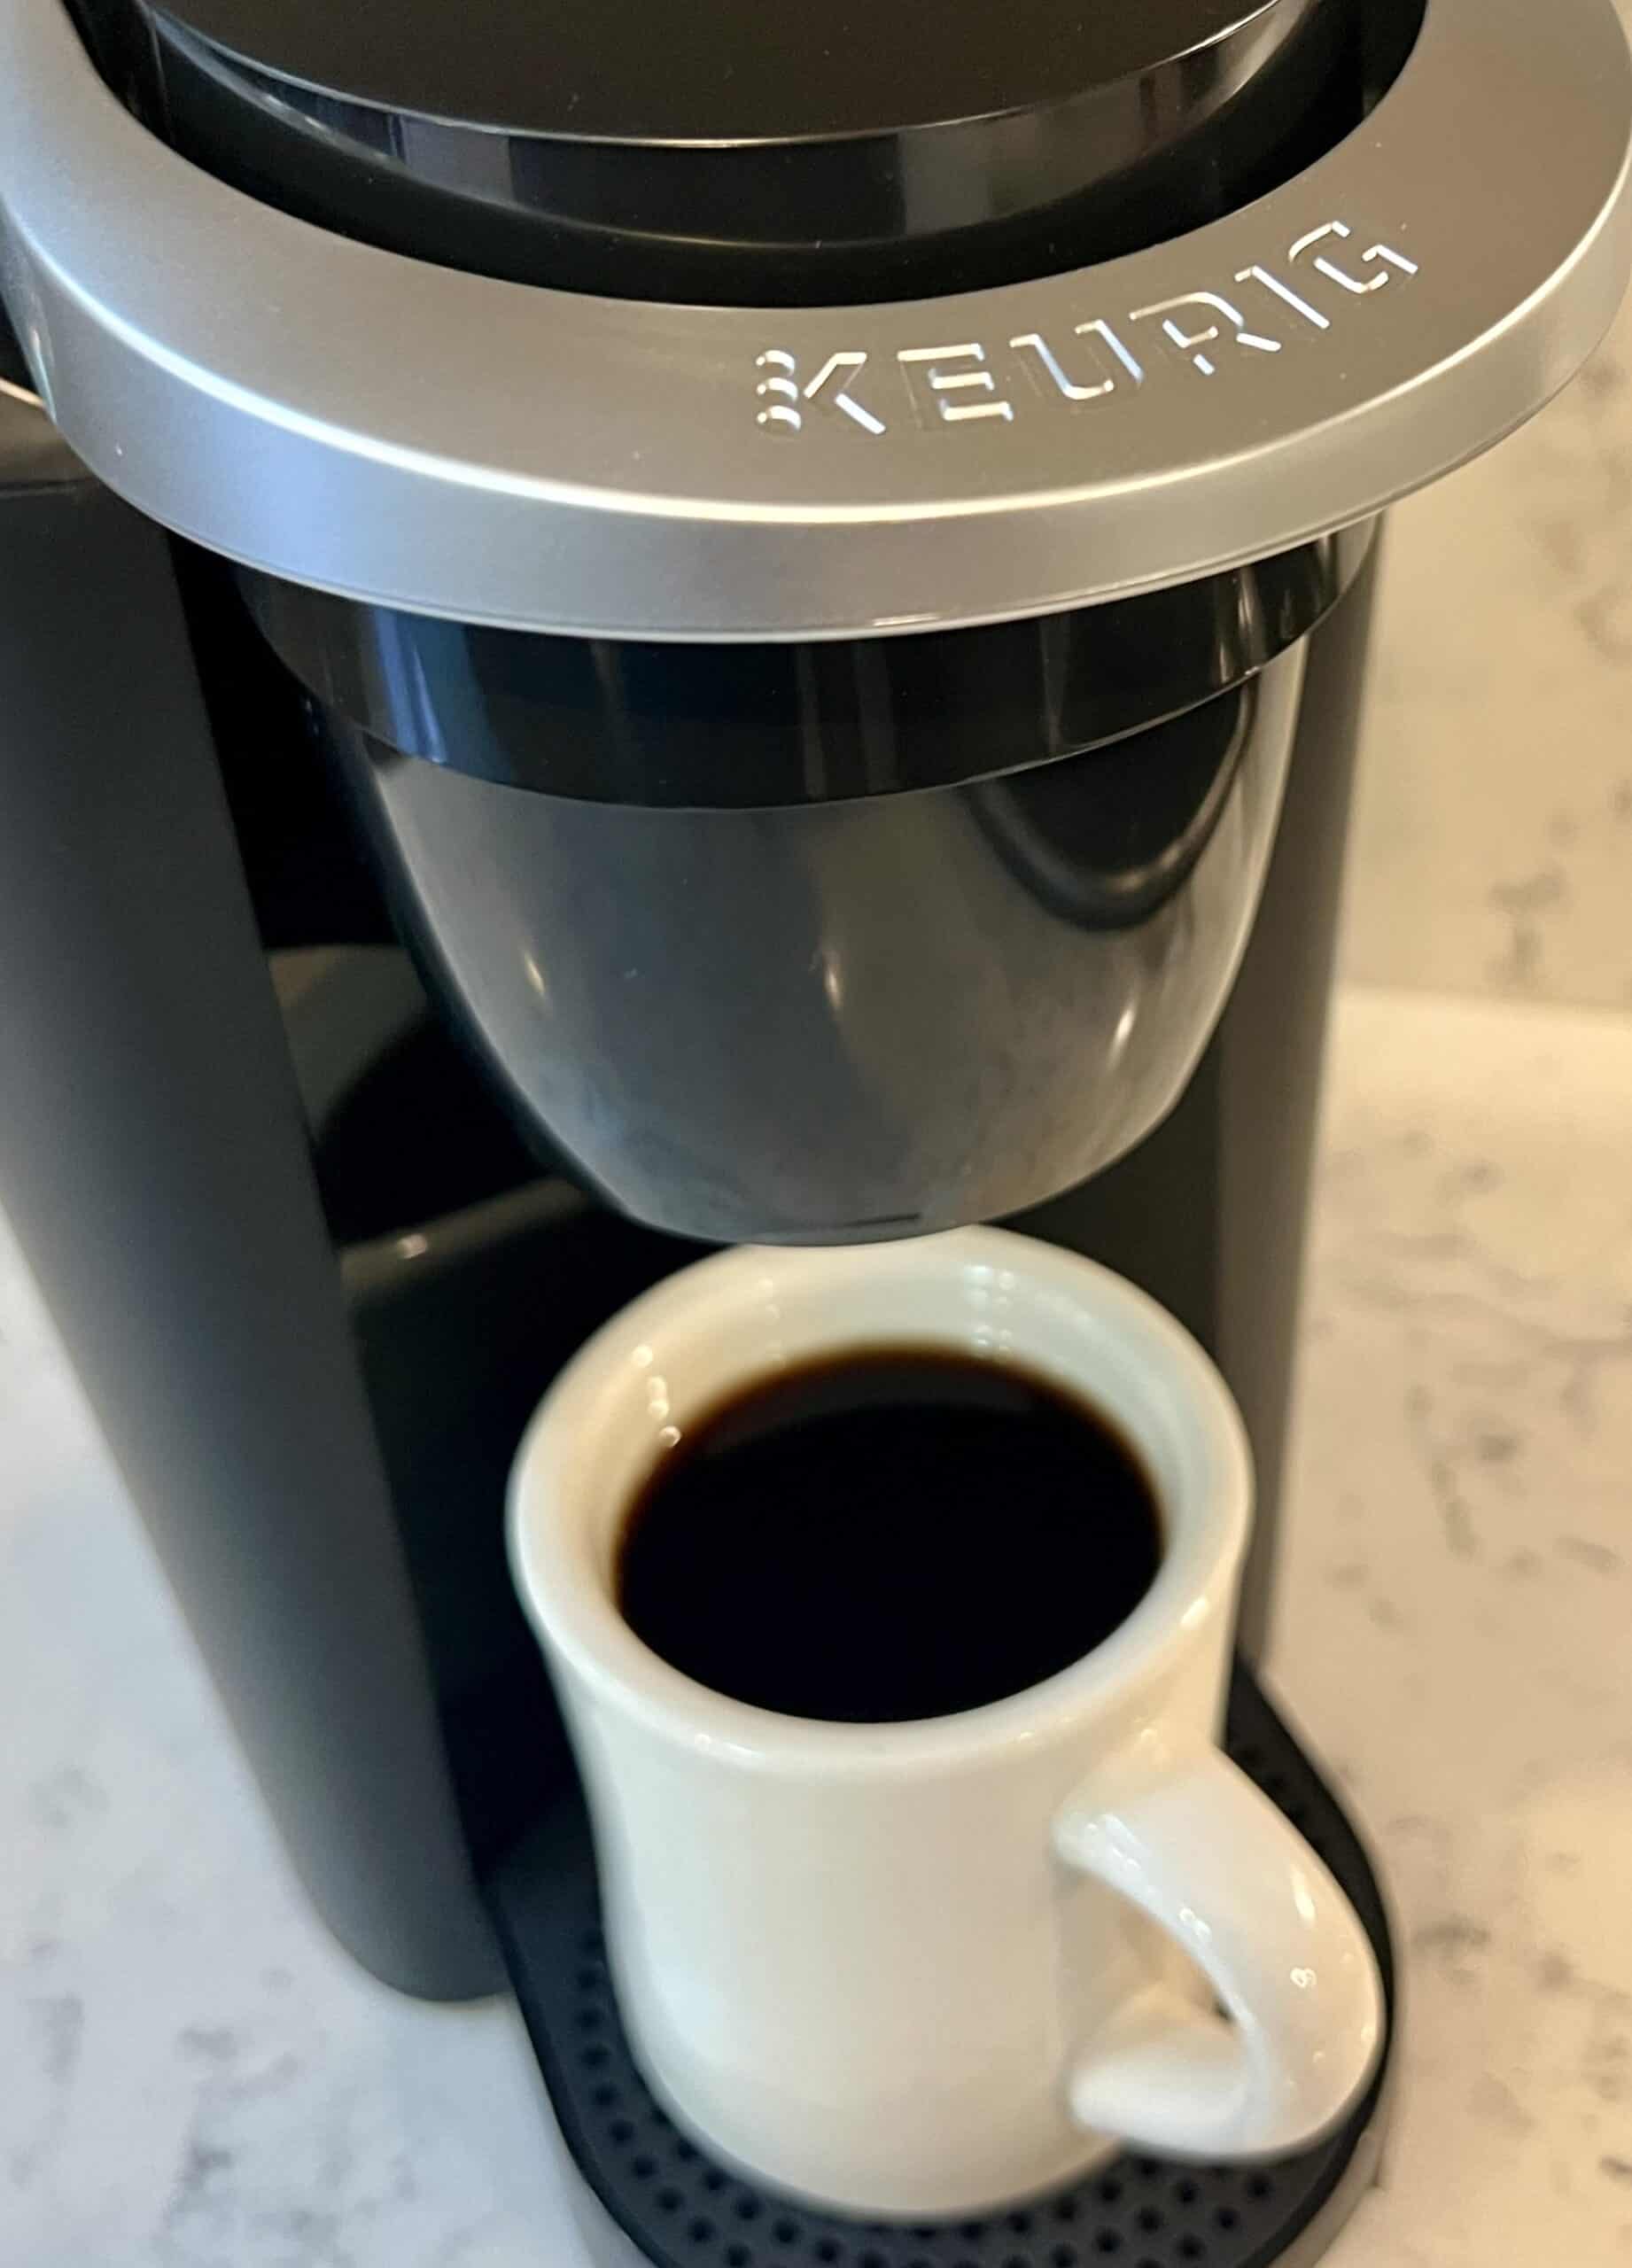 New Keurig Coffee Makers!